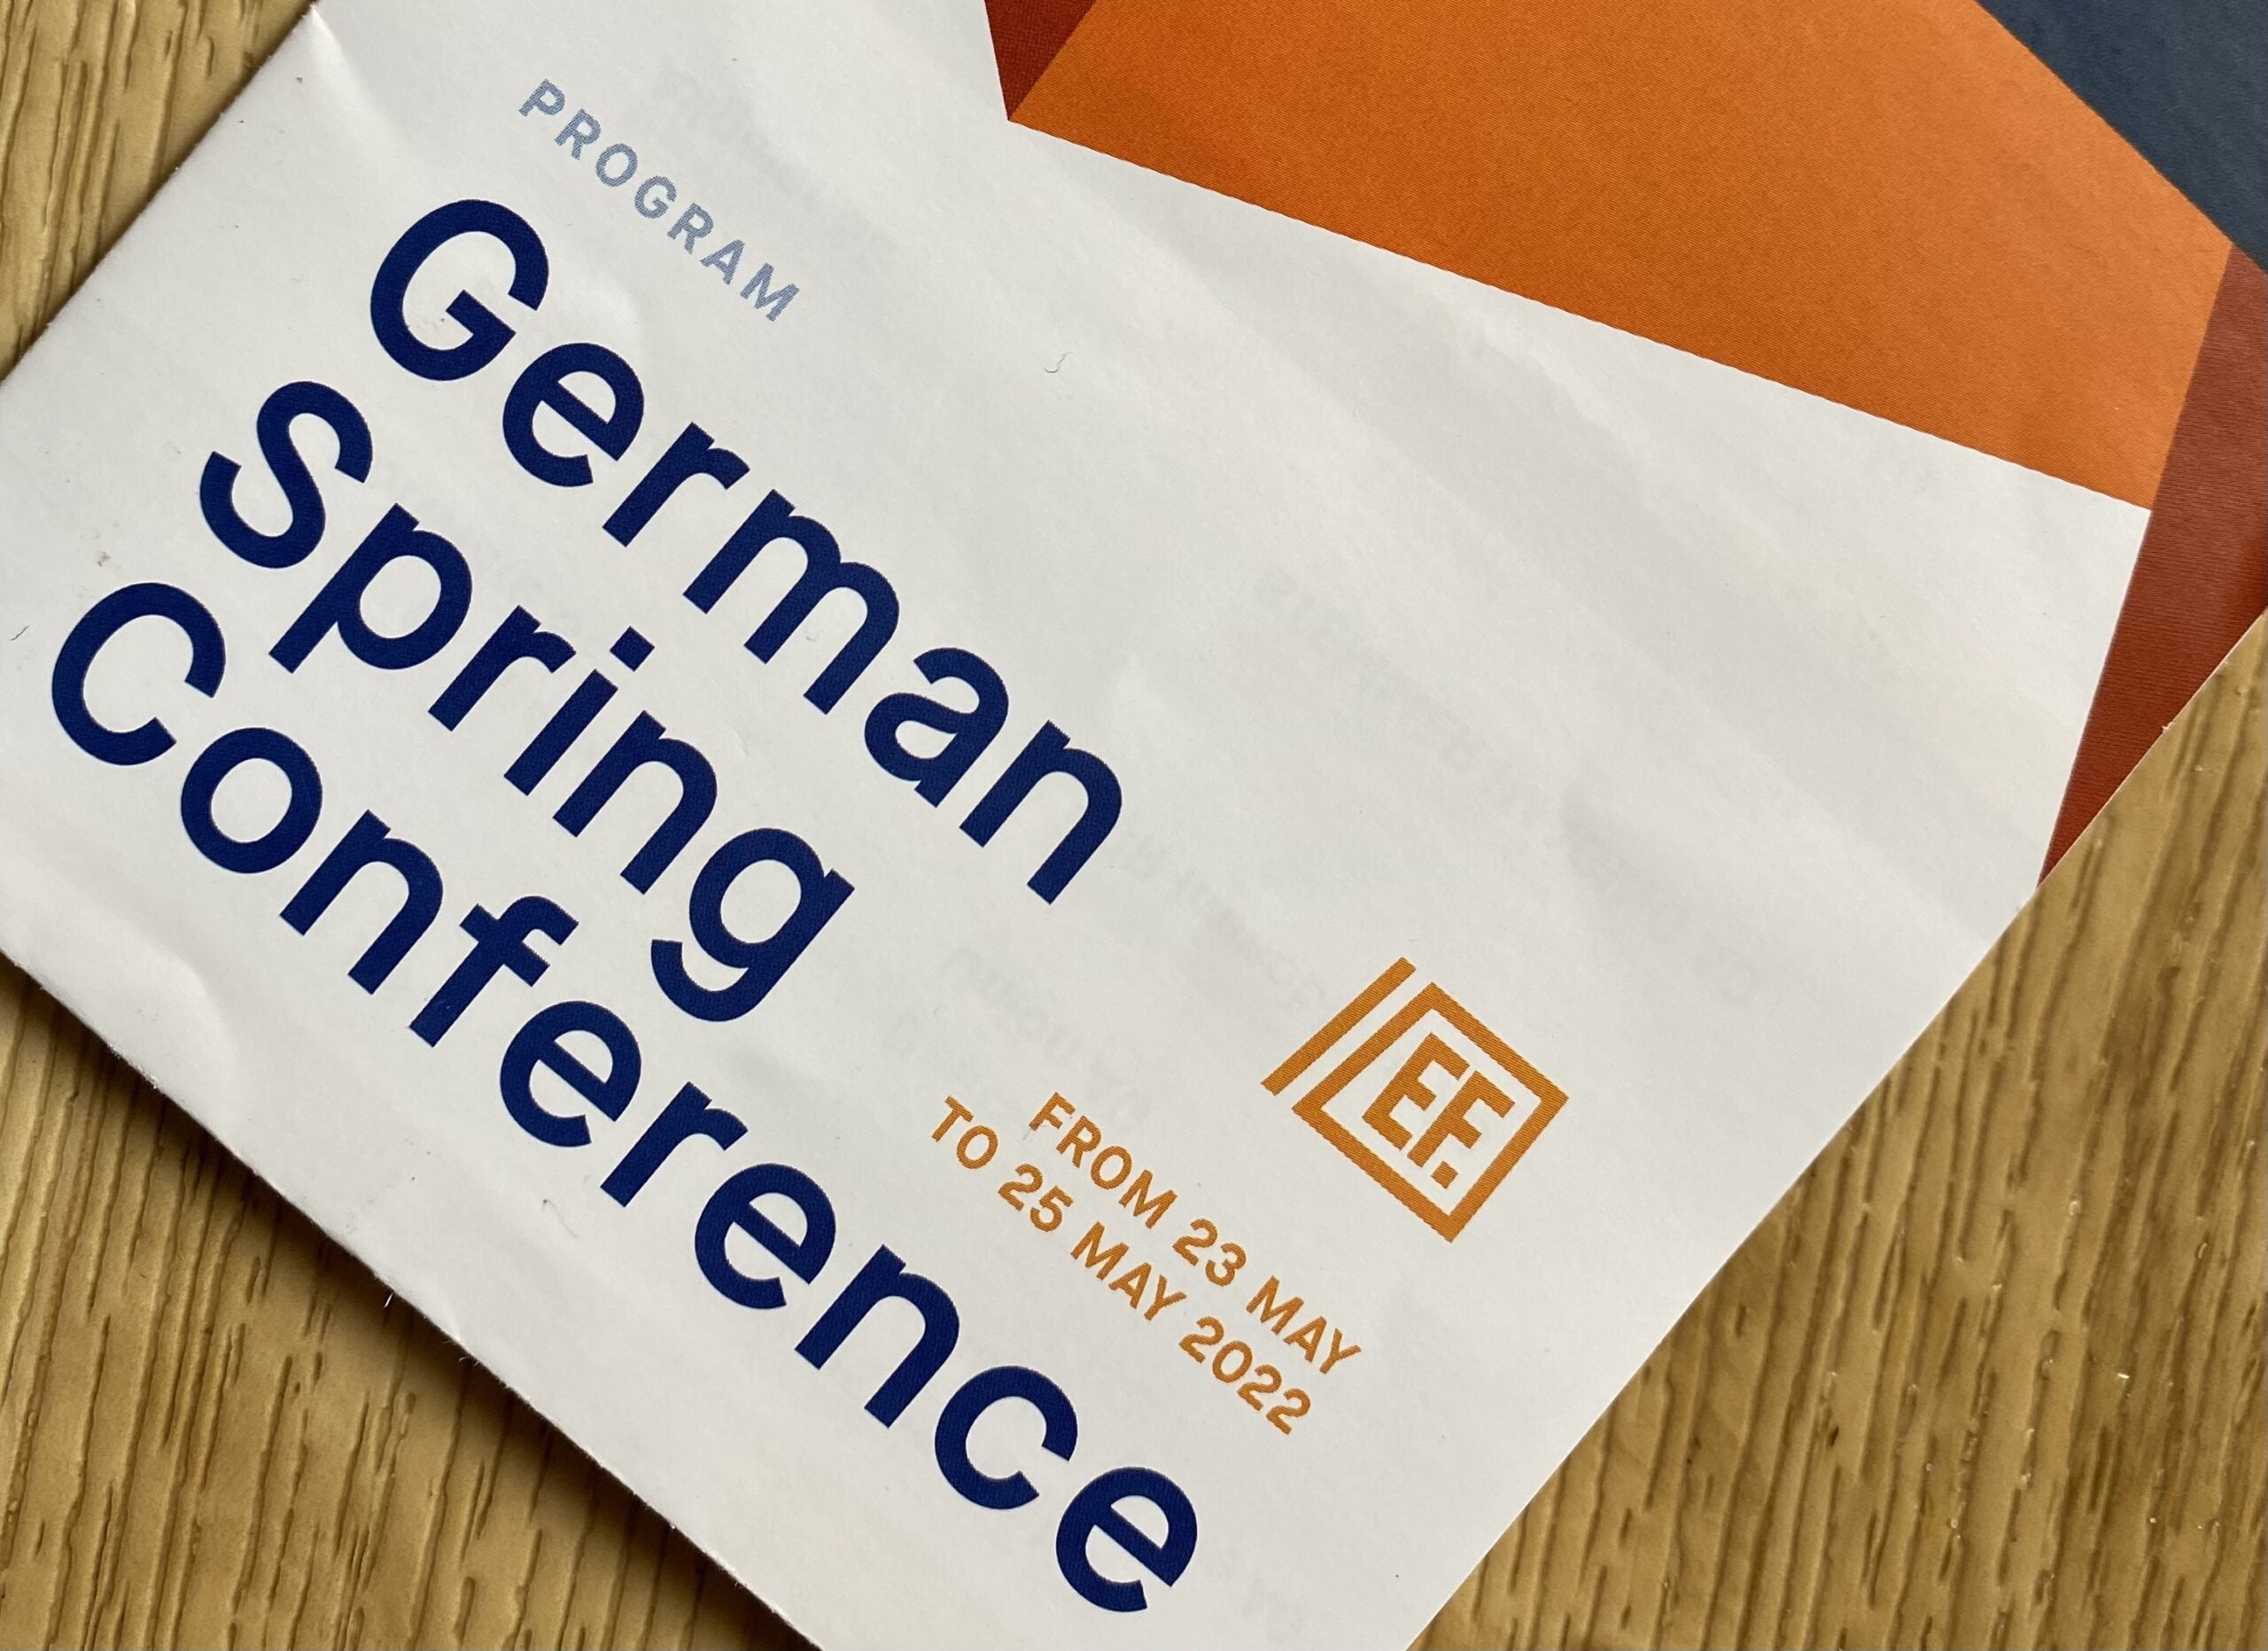 HanseYachts DEMIRE Voltabox Hornbach - Nachlese German Spring Conference. 